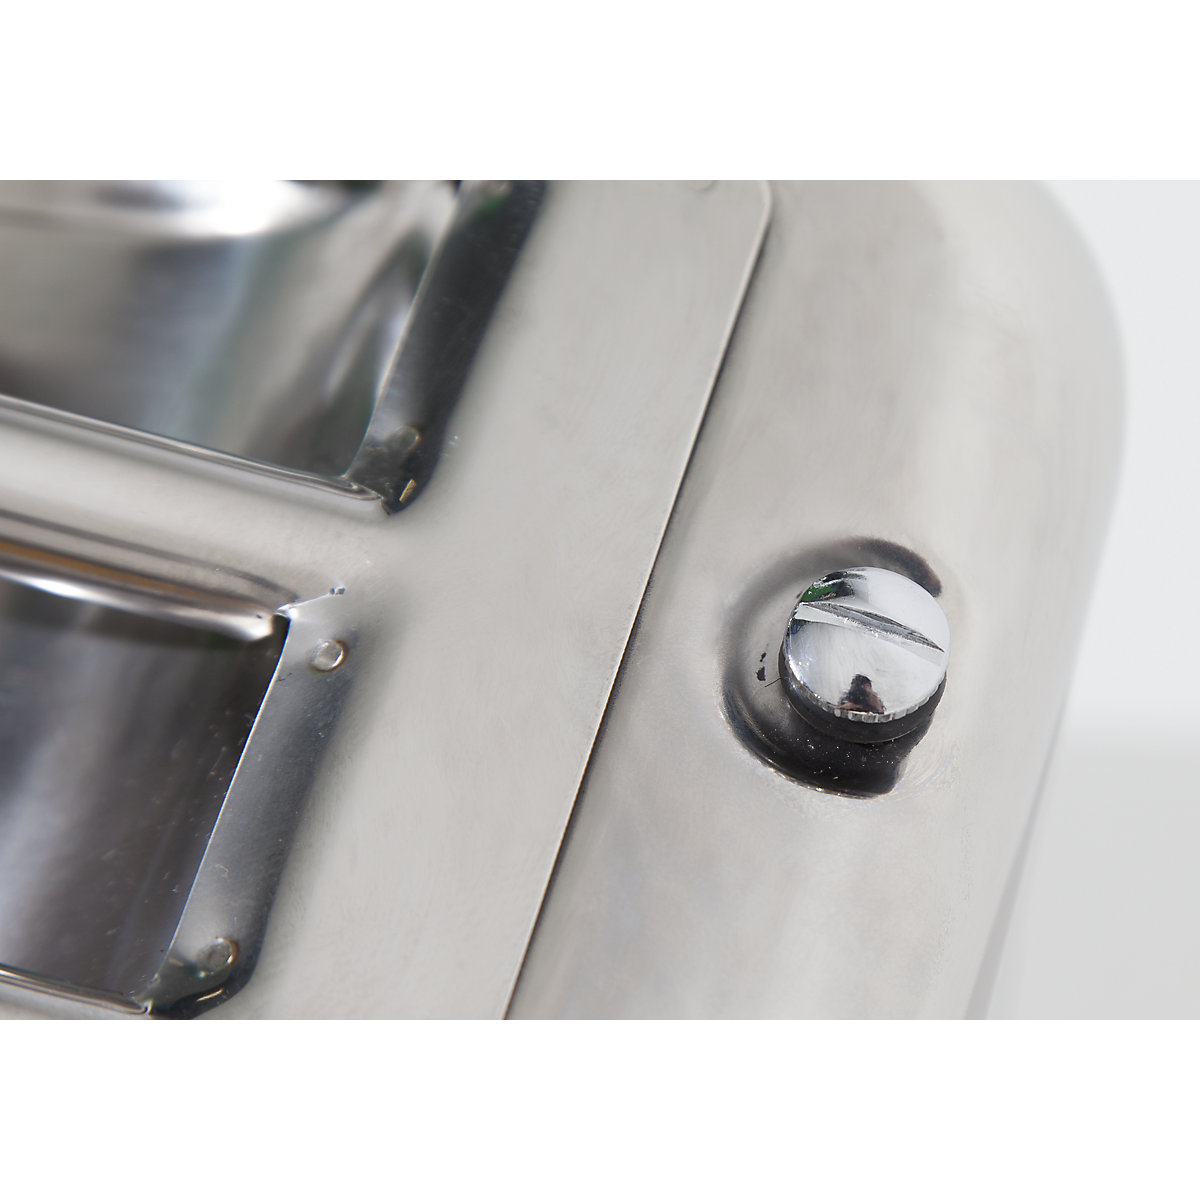 Canistră de siguranță cu robinet pentru dozare fină – FALCON (Imagine produs 4)-3